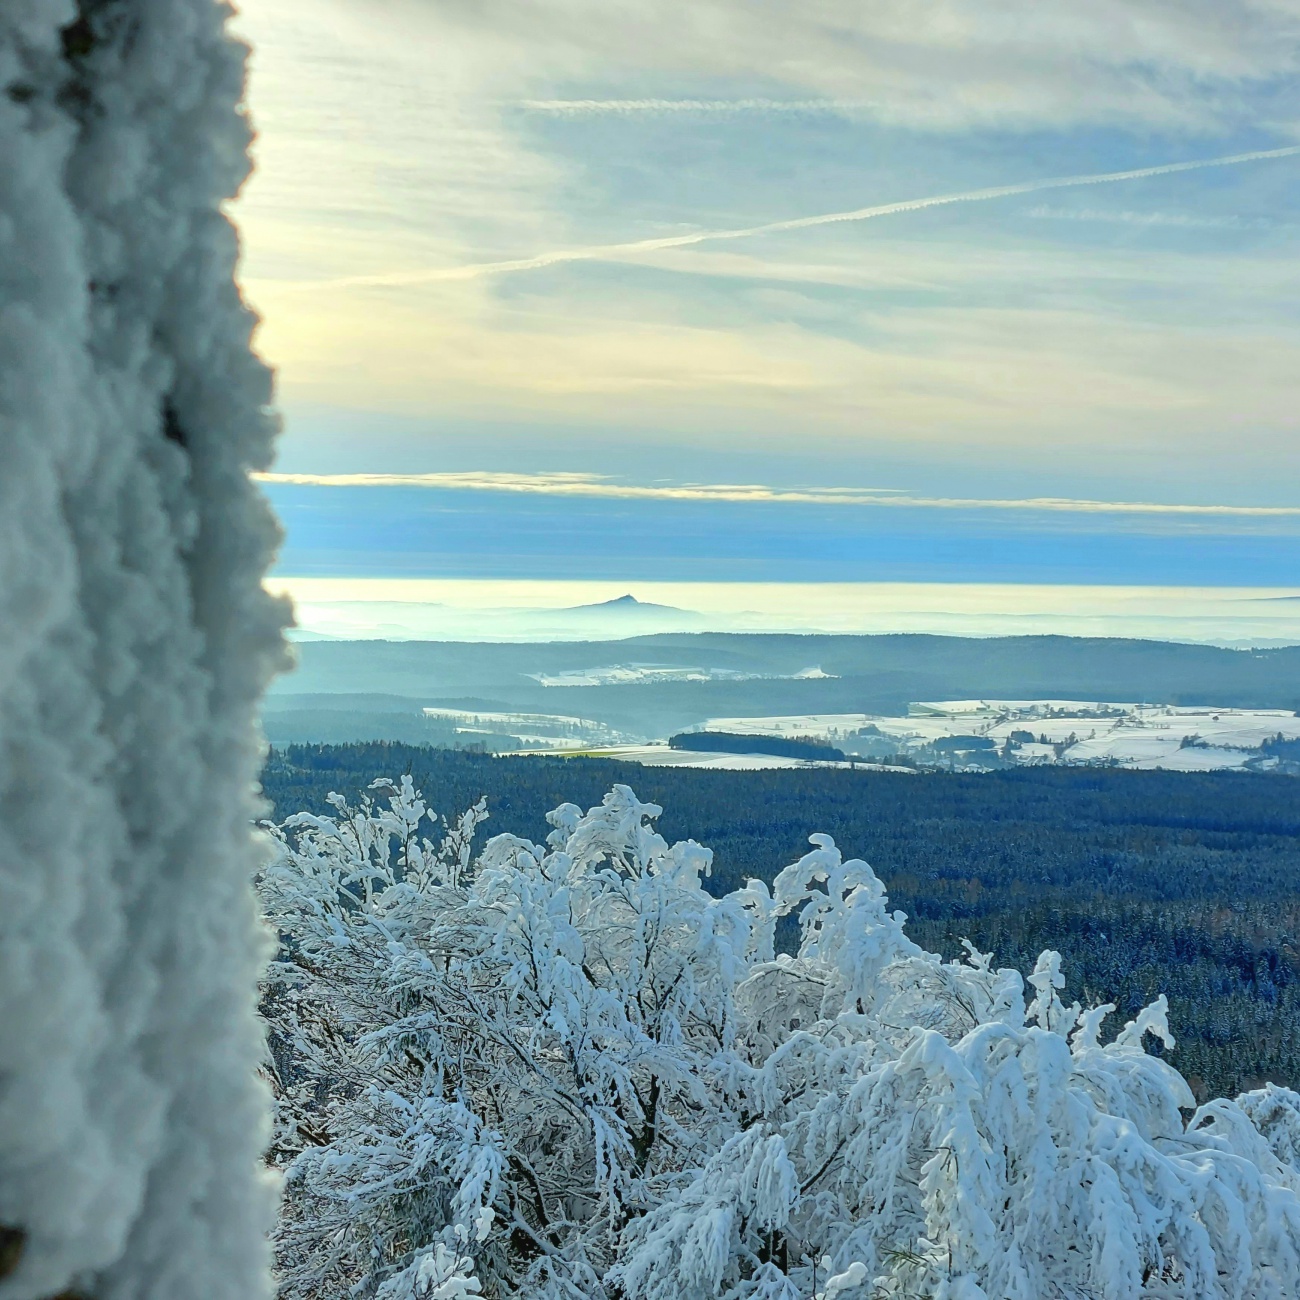 Foto: Martin Zehrer - Unglaubliche Aussicht von der Kösseine aus ins Winter-Land...<br />
Am Horizont ist der Rauhe Kulm zu erkennen.  